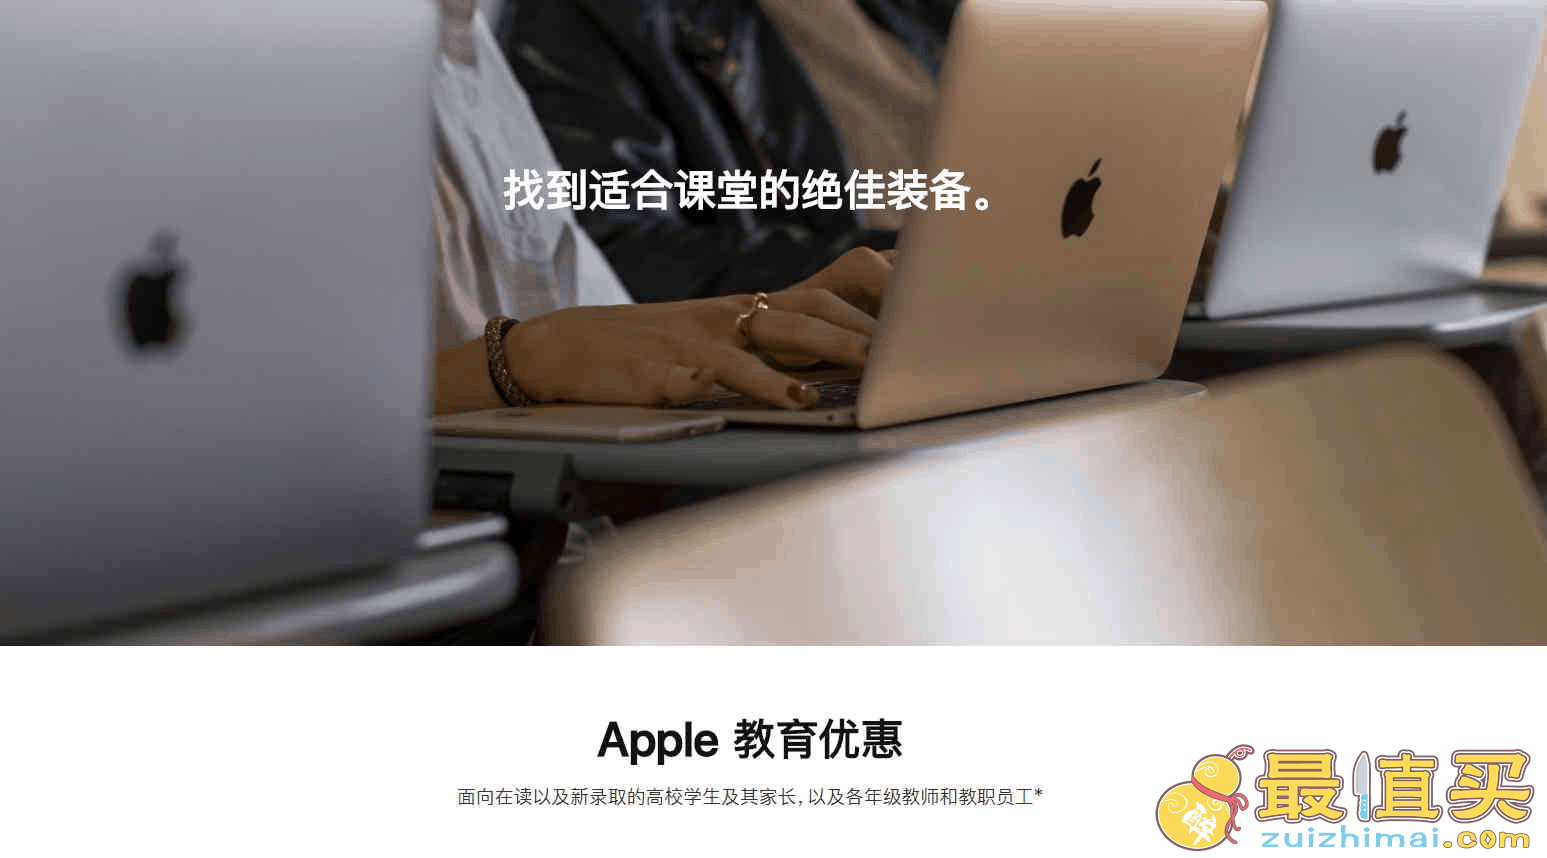 apple教育优惠和返校优惠区别 苹果每年都送beats耳机吗 2021最新苹果商店官网活动